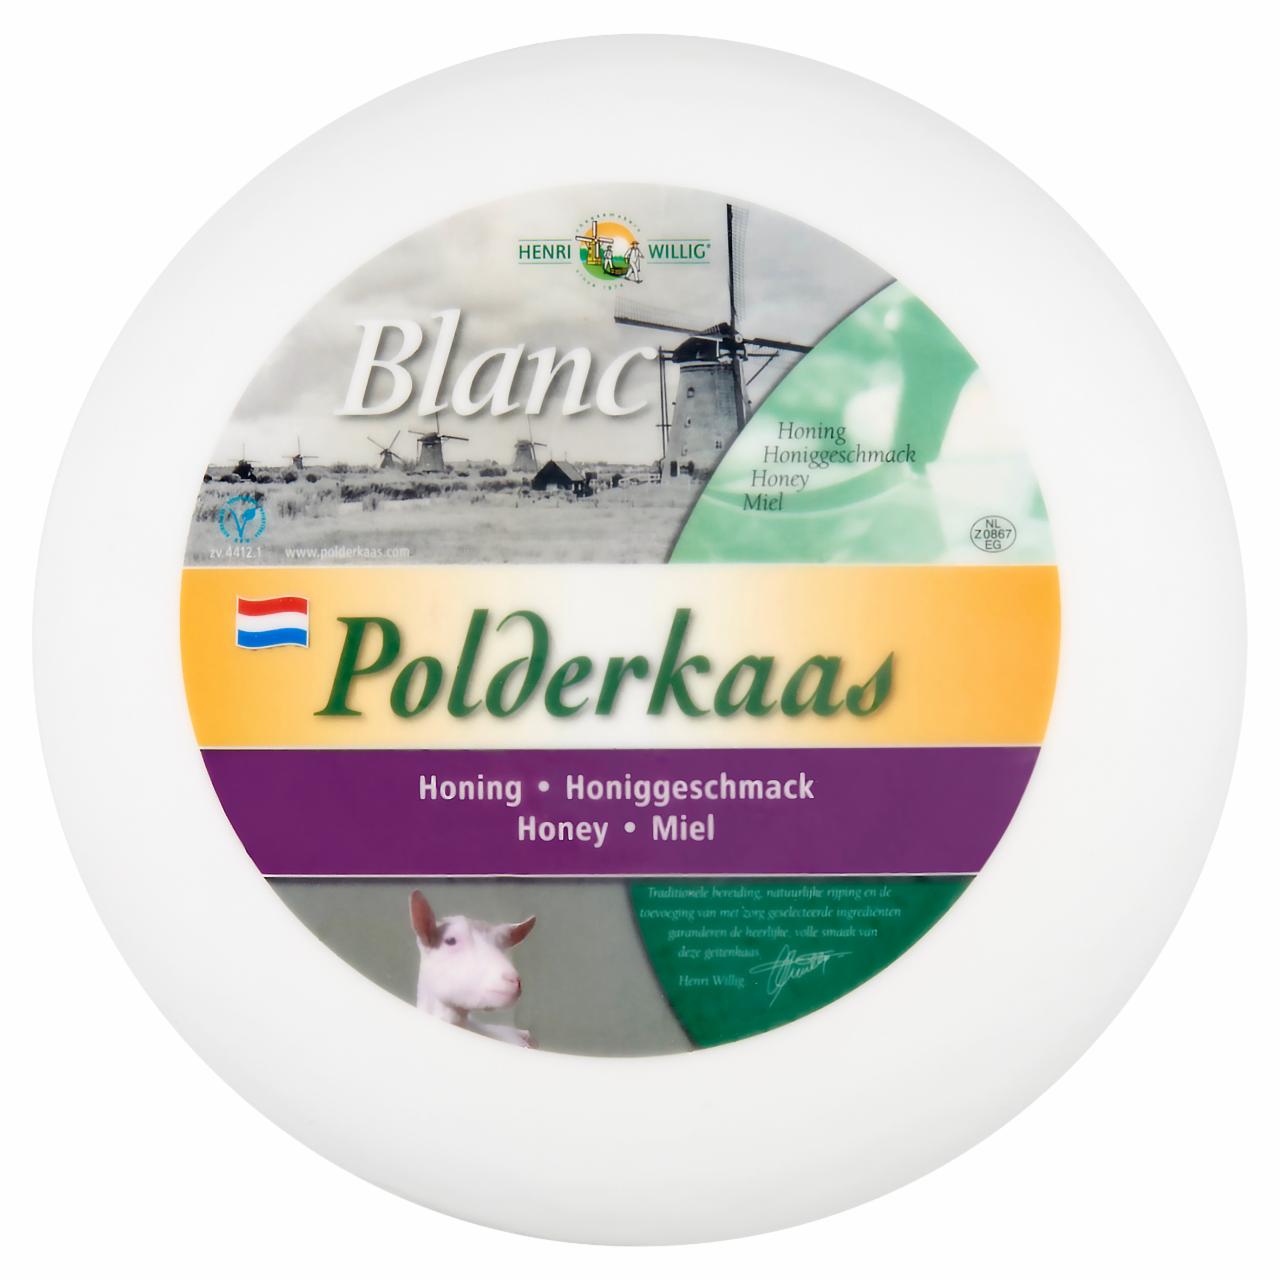 Képek - Polderkaas holland zsíros, félkemény kecske gouda sajt, méz ízesítéssel